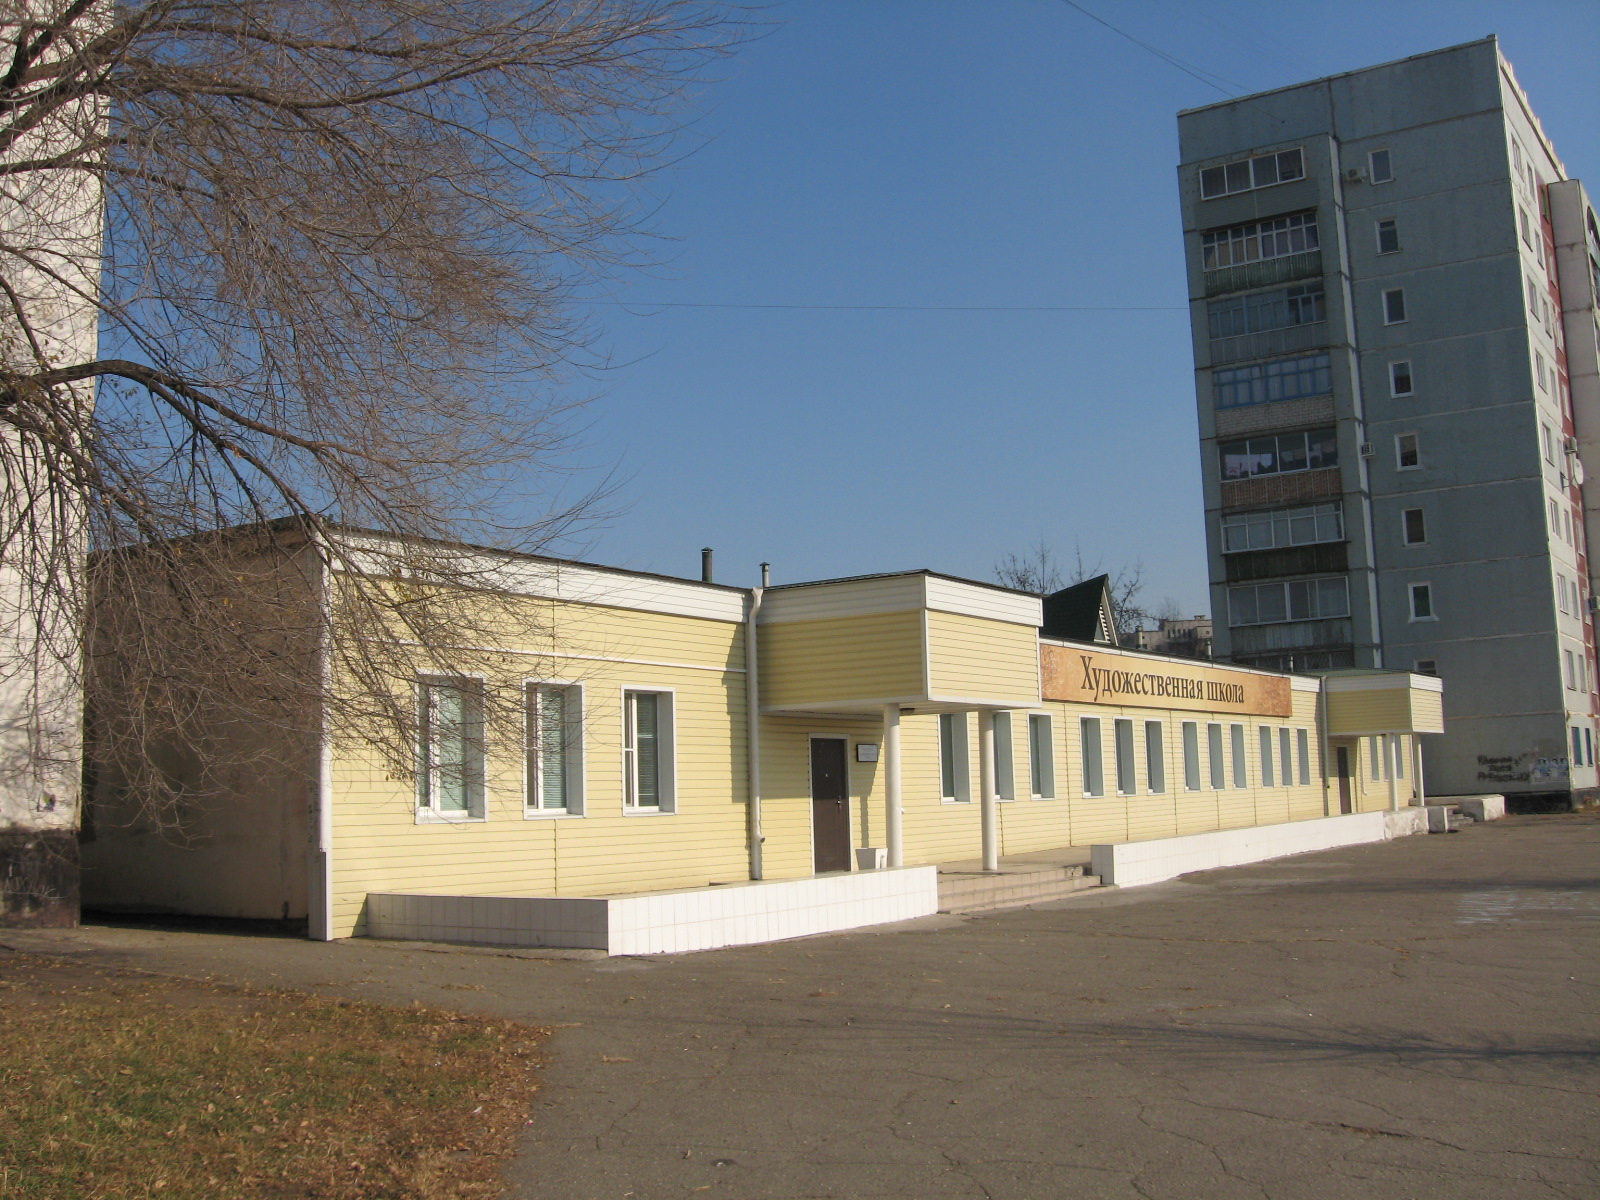 Художественная школа г. Благовещенска на Игнатьевском шоссе